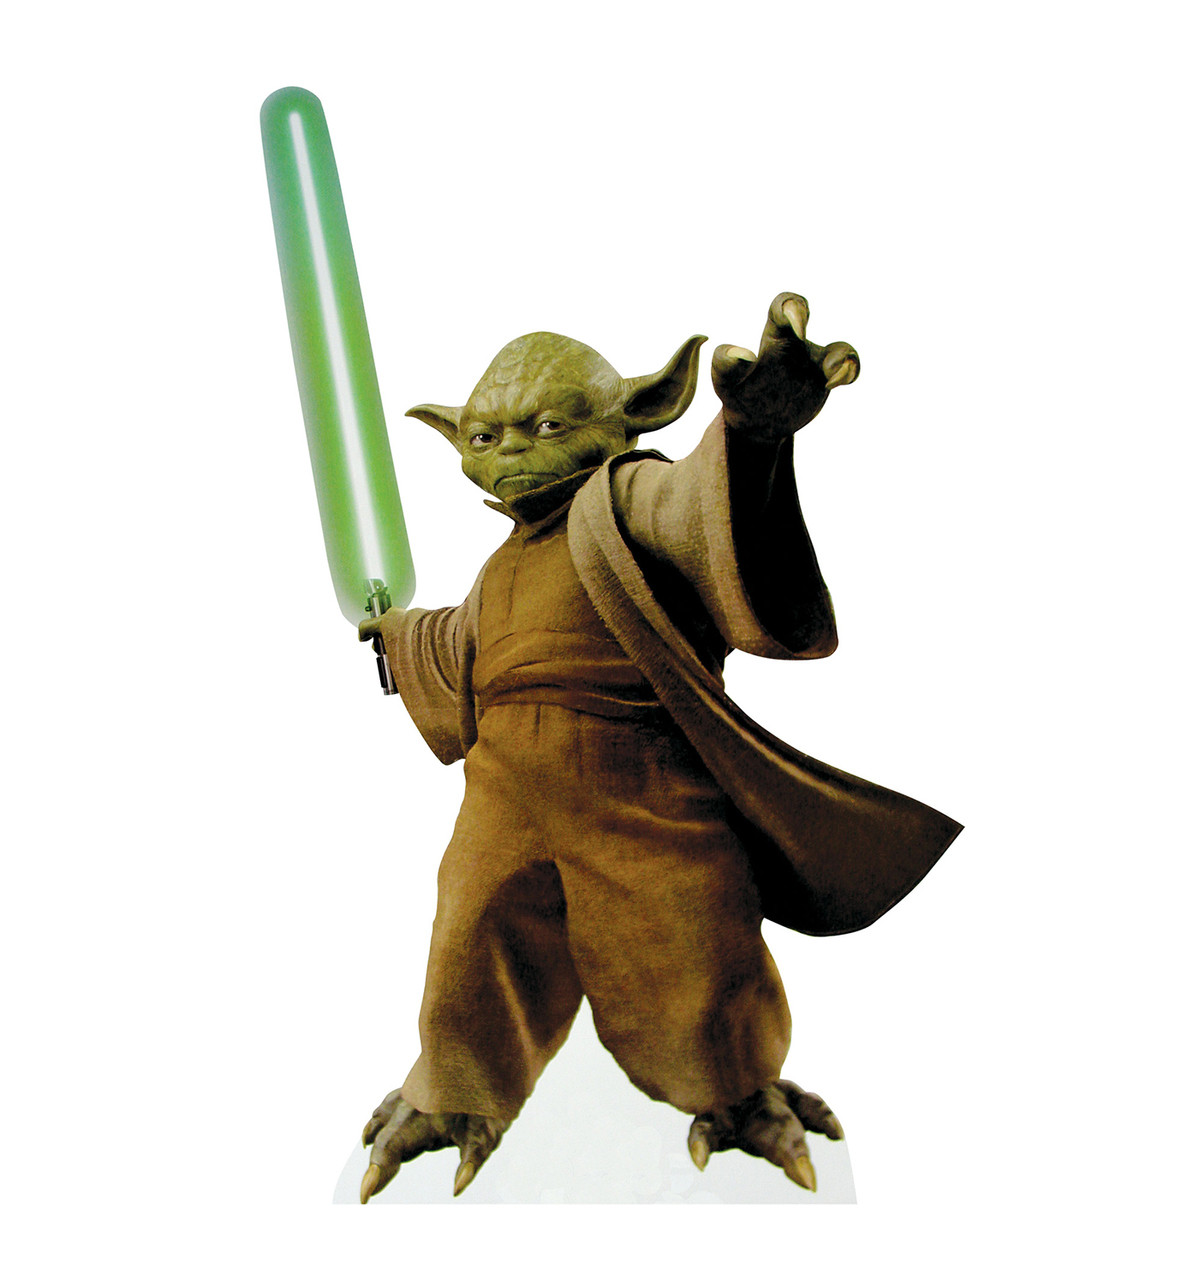 Life-size Yoda with Lightsaber Star Wars Cardboard Cutout